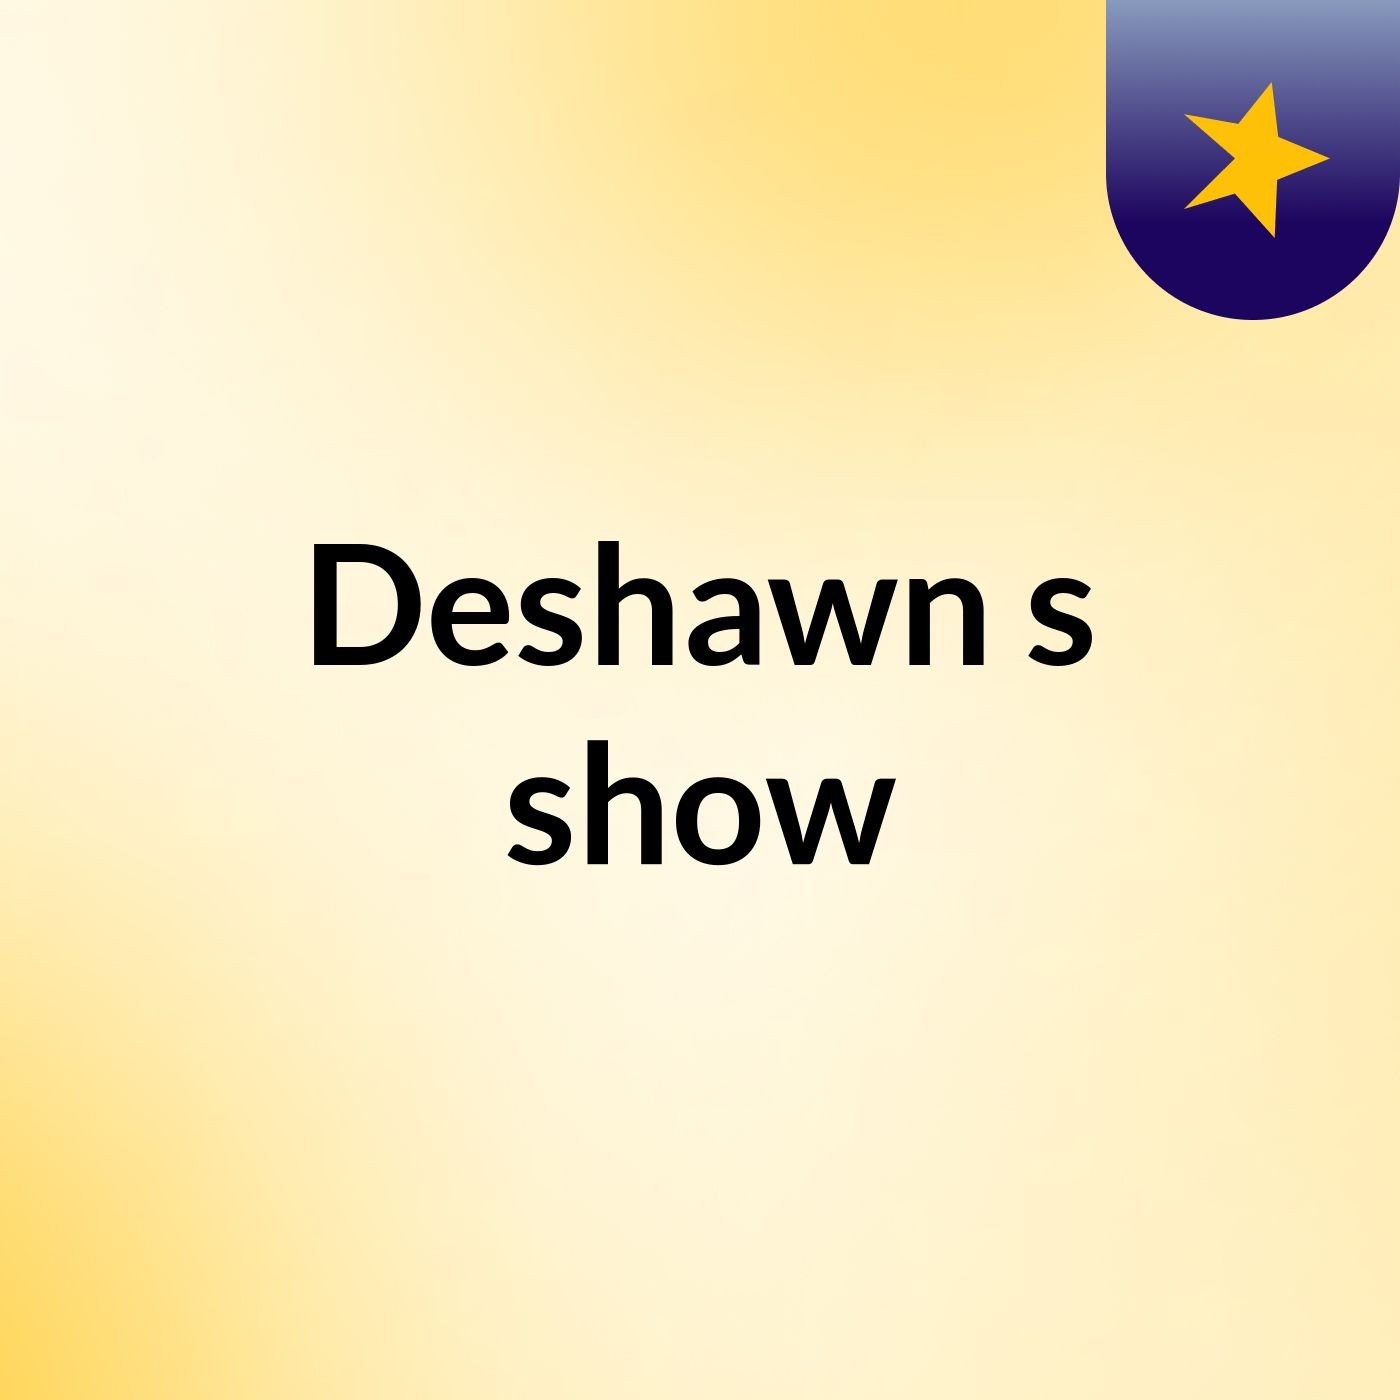 Episode 2 - Deshawn's show